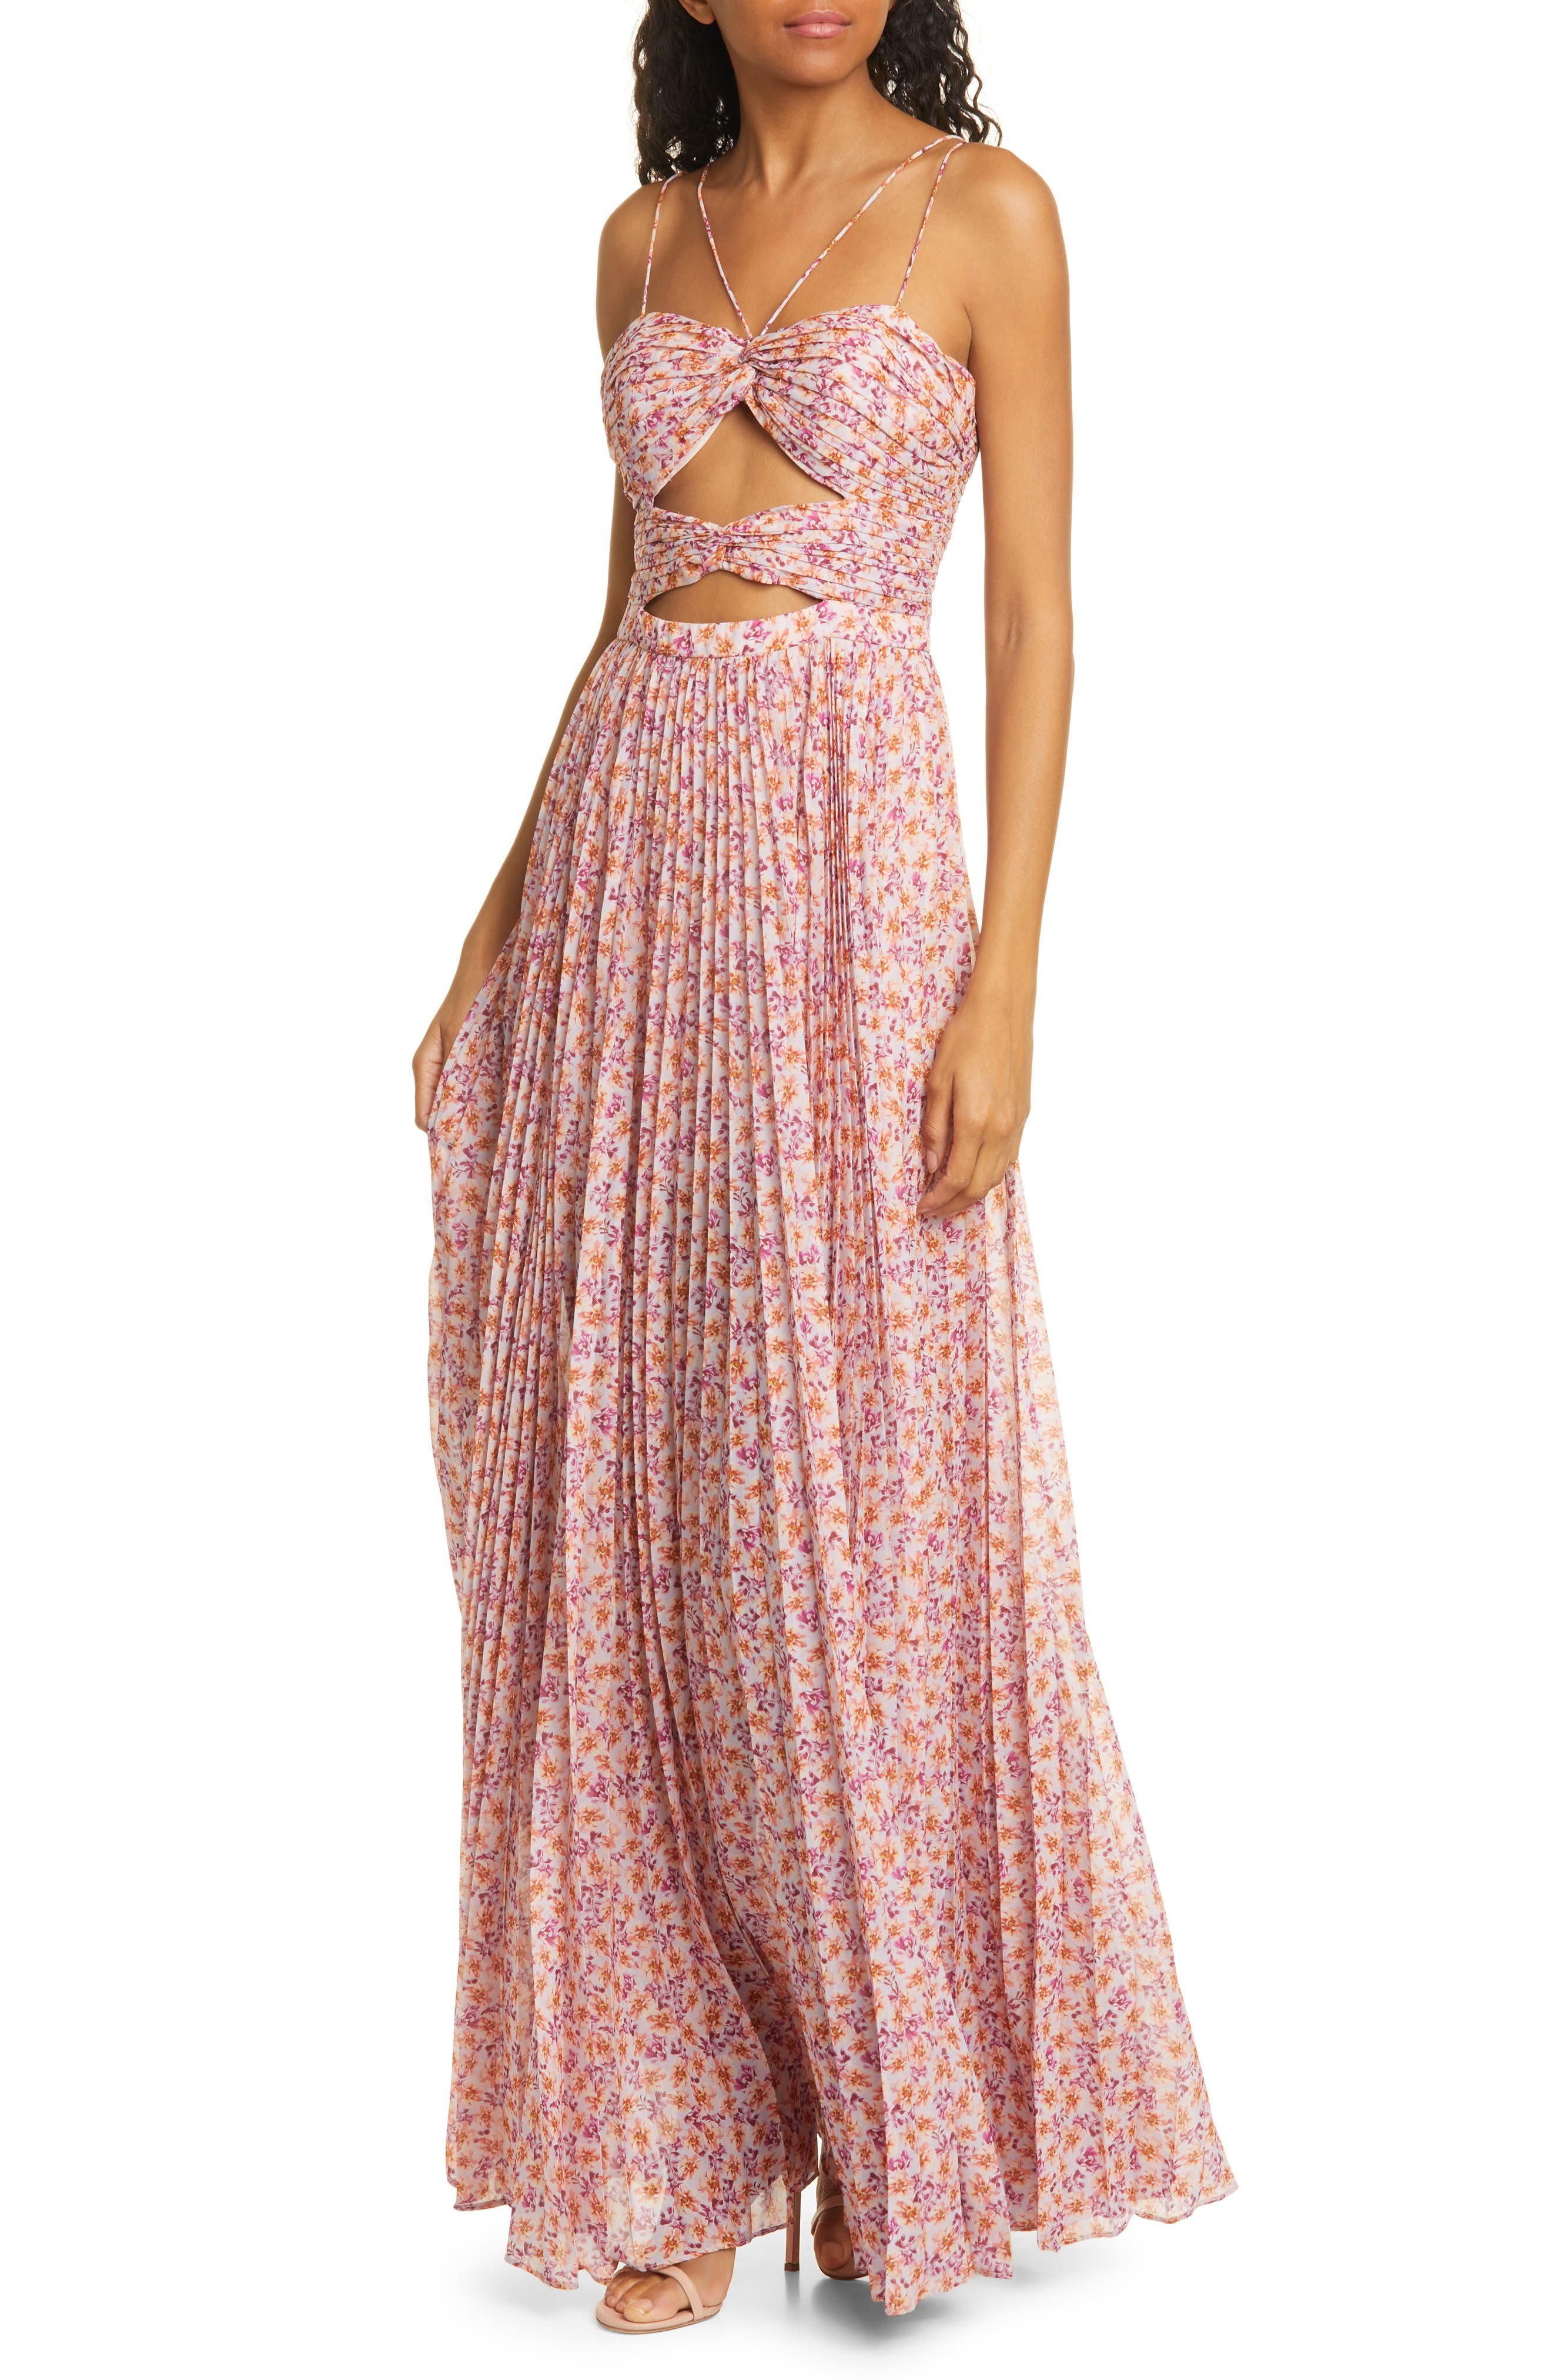 amur floral dress